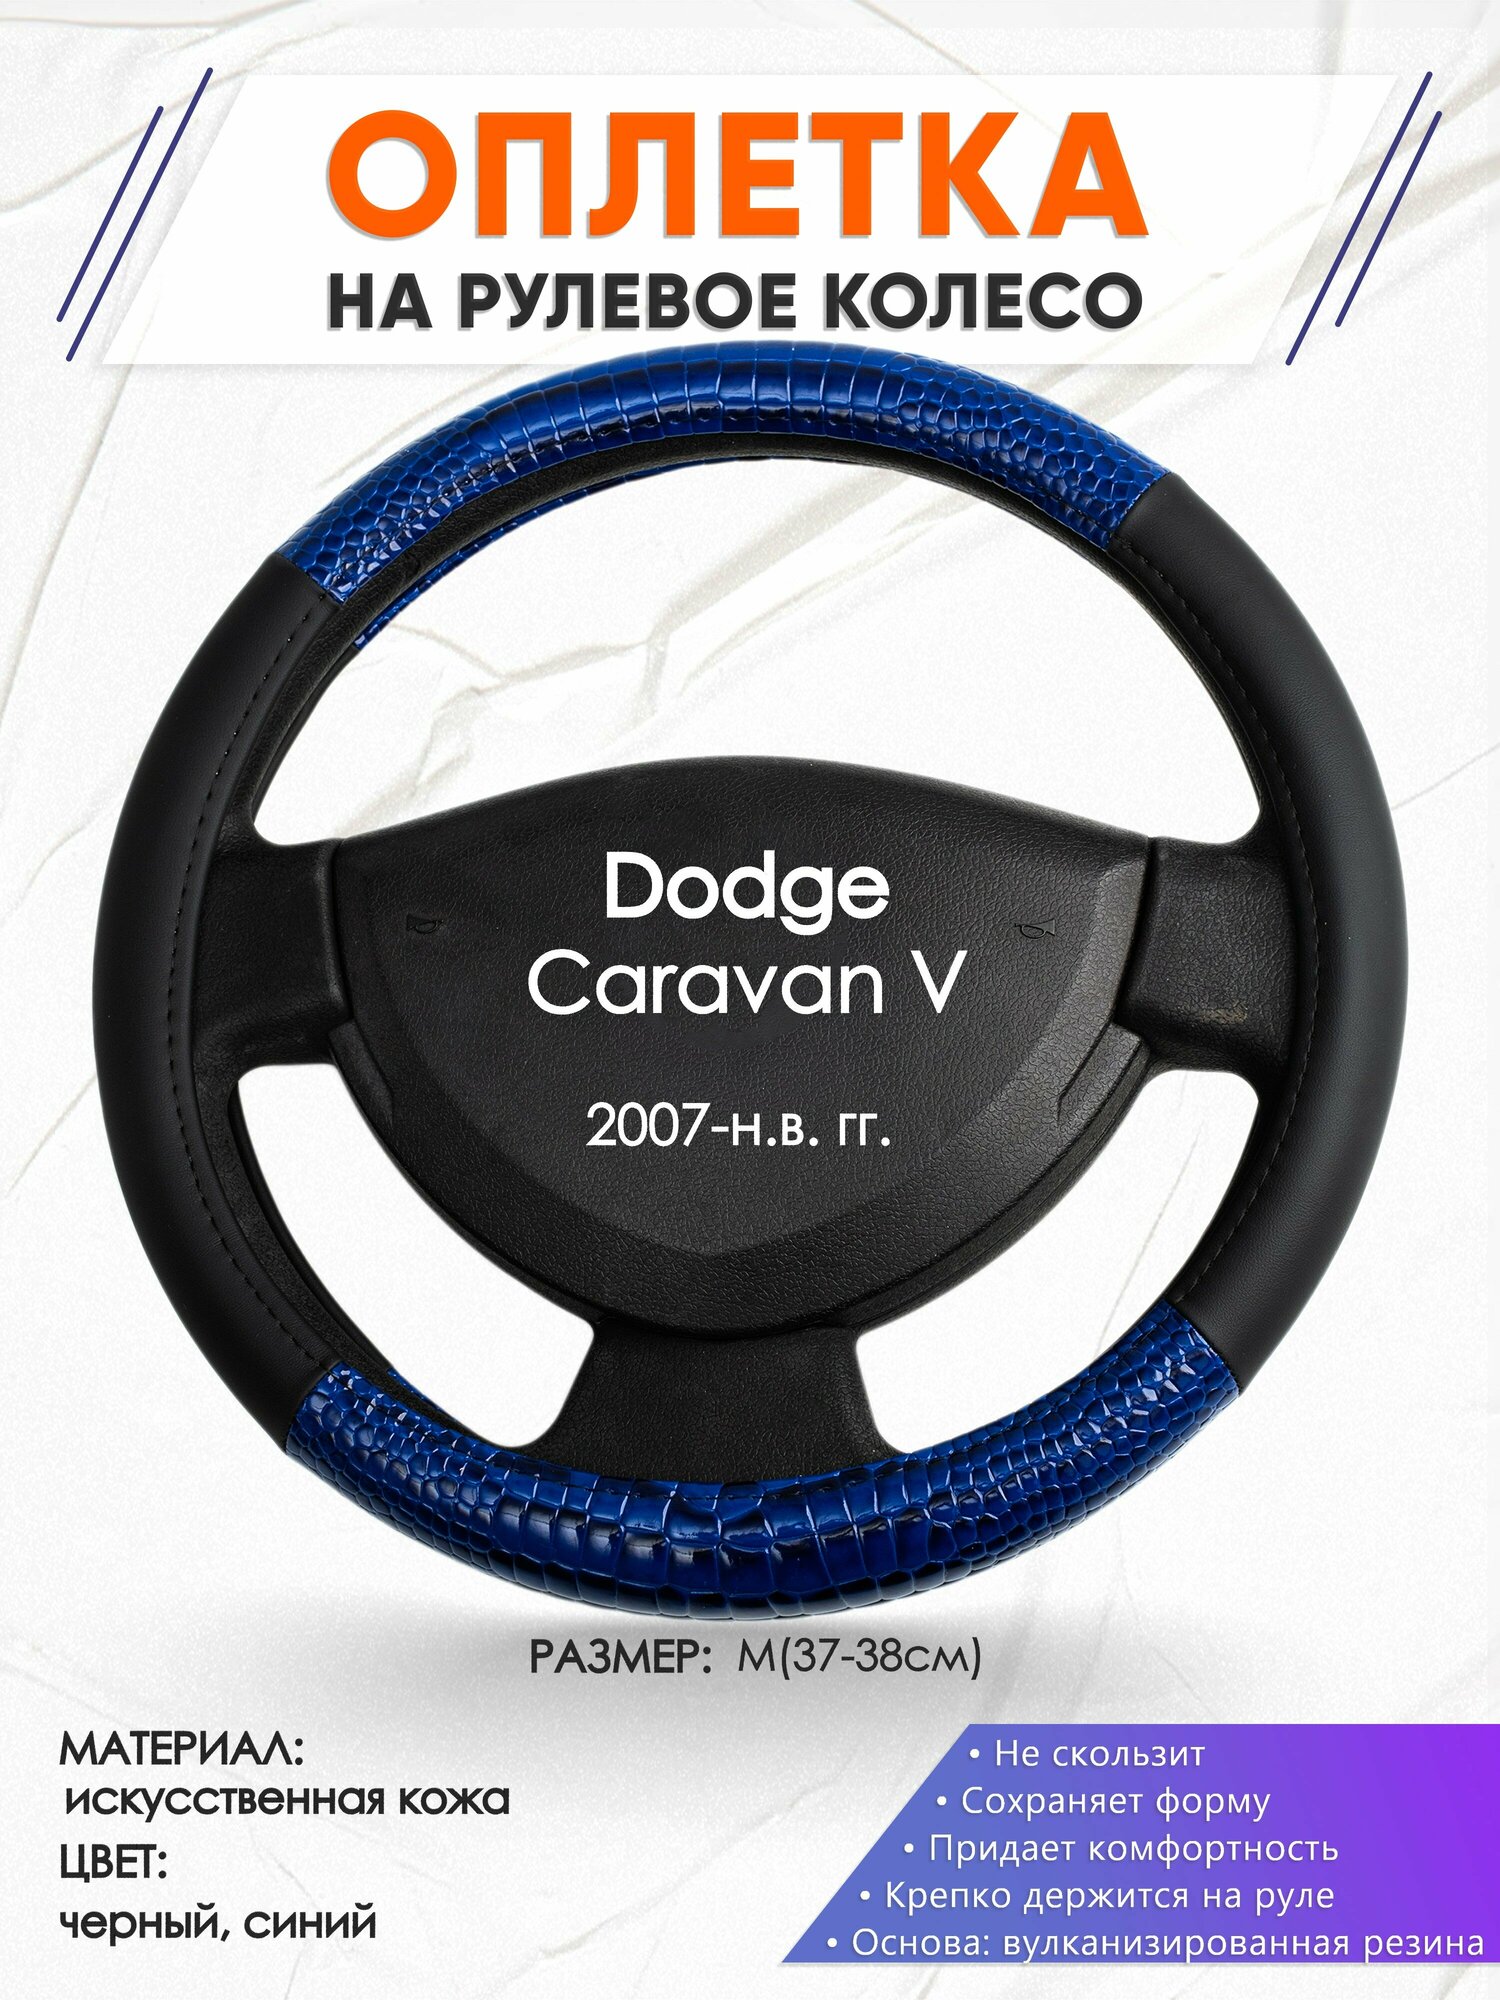 Оплетка наруль для Dodge Caravan 5(Додж Караван 4) 2007-н. в. годов выпуска размер M(37-38см) Искусственная кожа 67